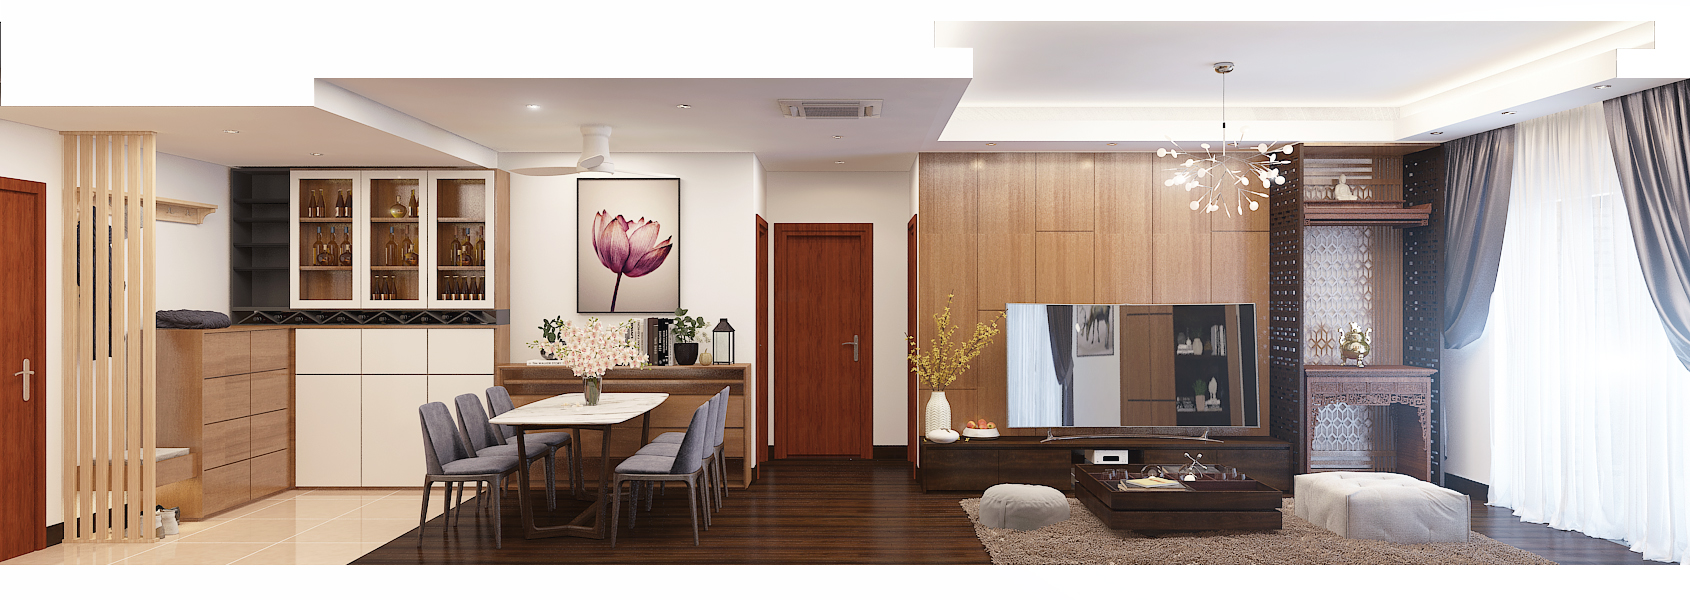 thiết kế nội thất chung cư tại Hà Nội Căn hộ chung cư GoldMark  7 1562020152